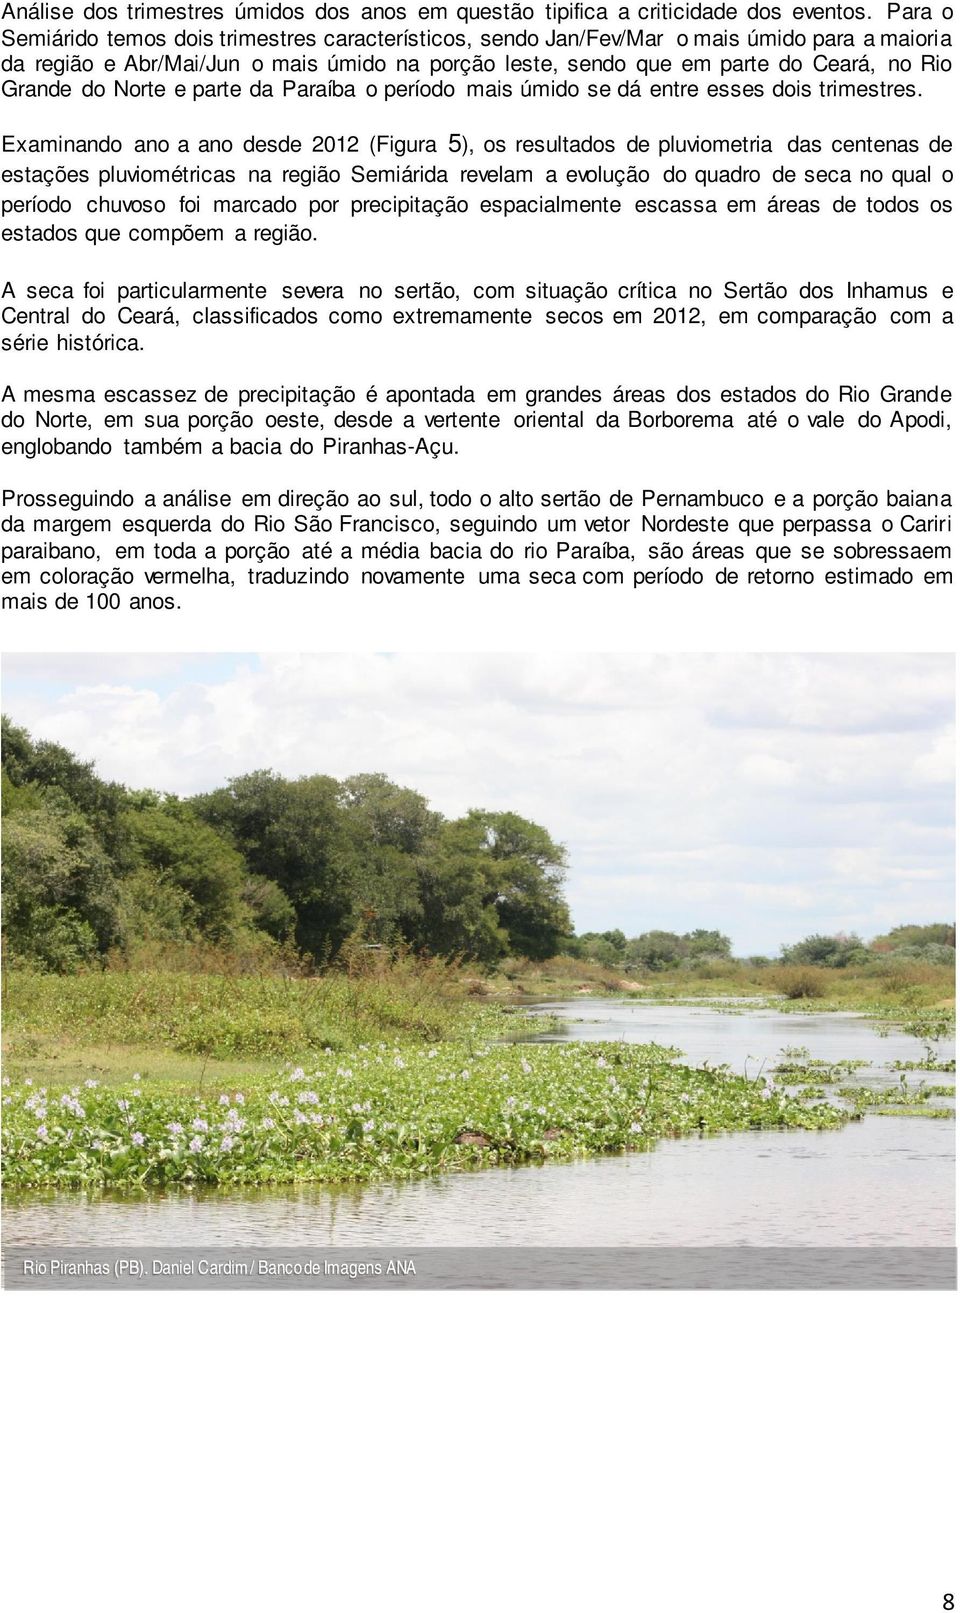 do Norte e parte da Paraíba o período mais úmido se dá entre esses dois trimestres.